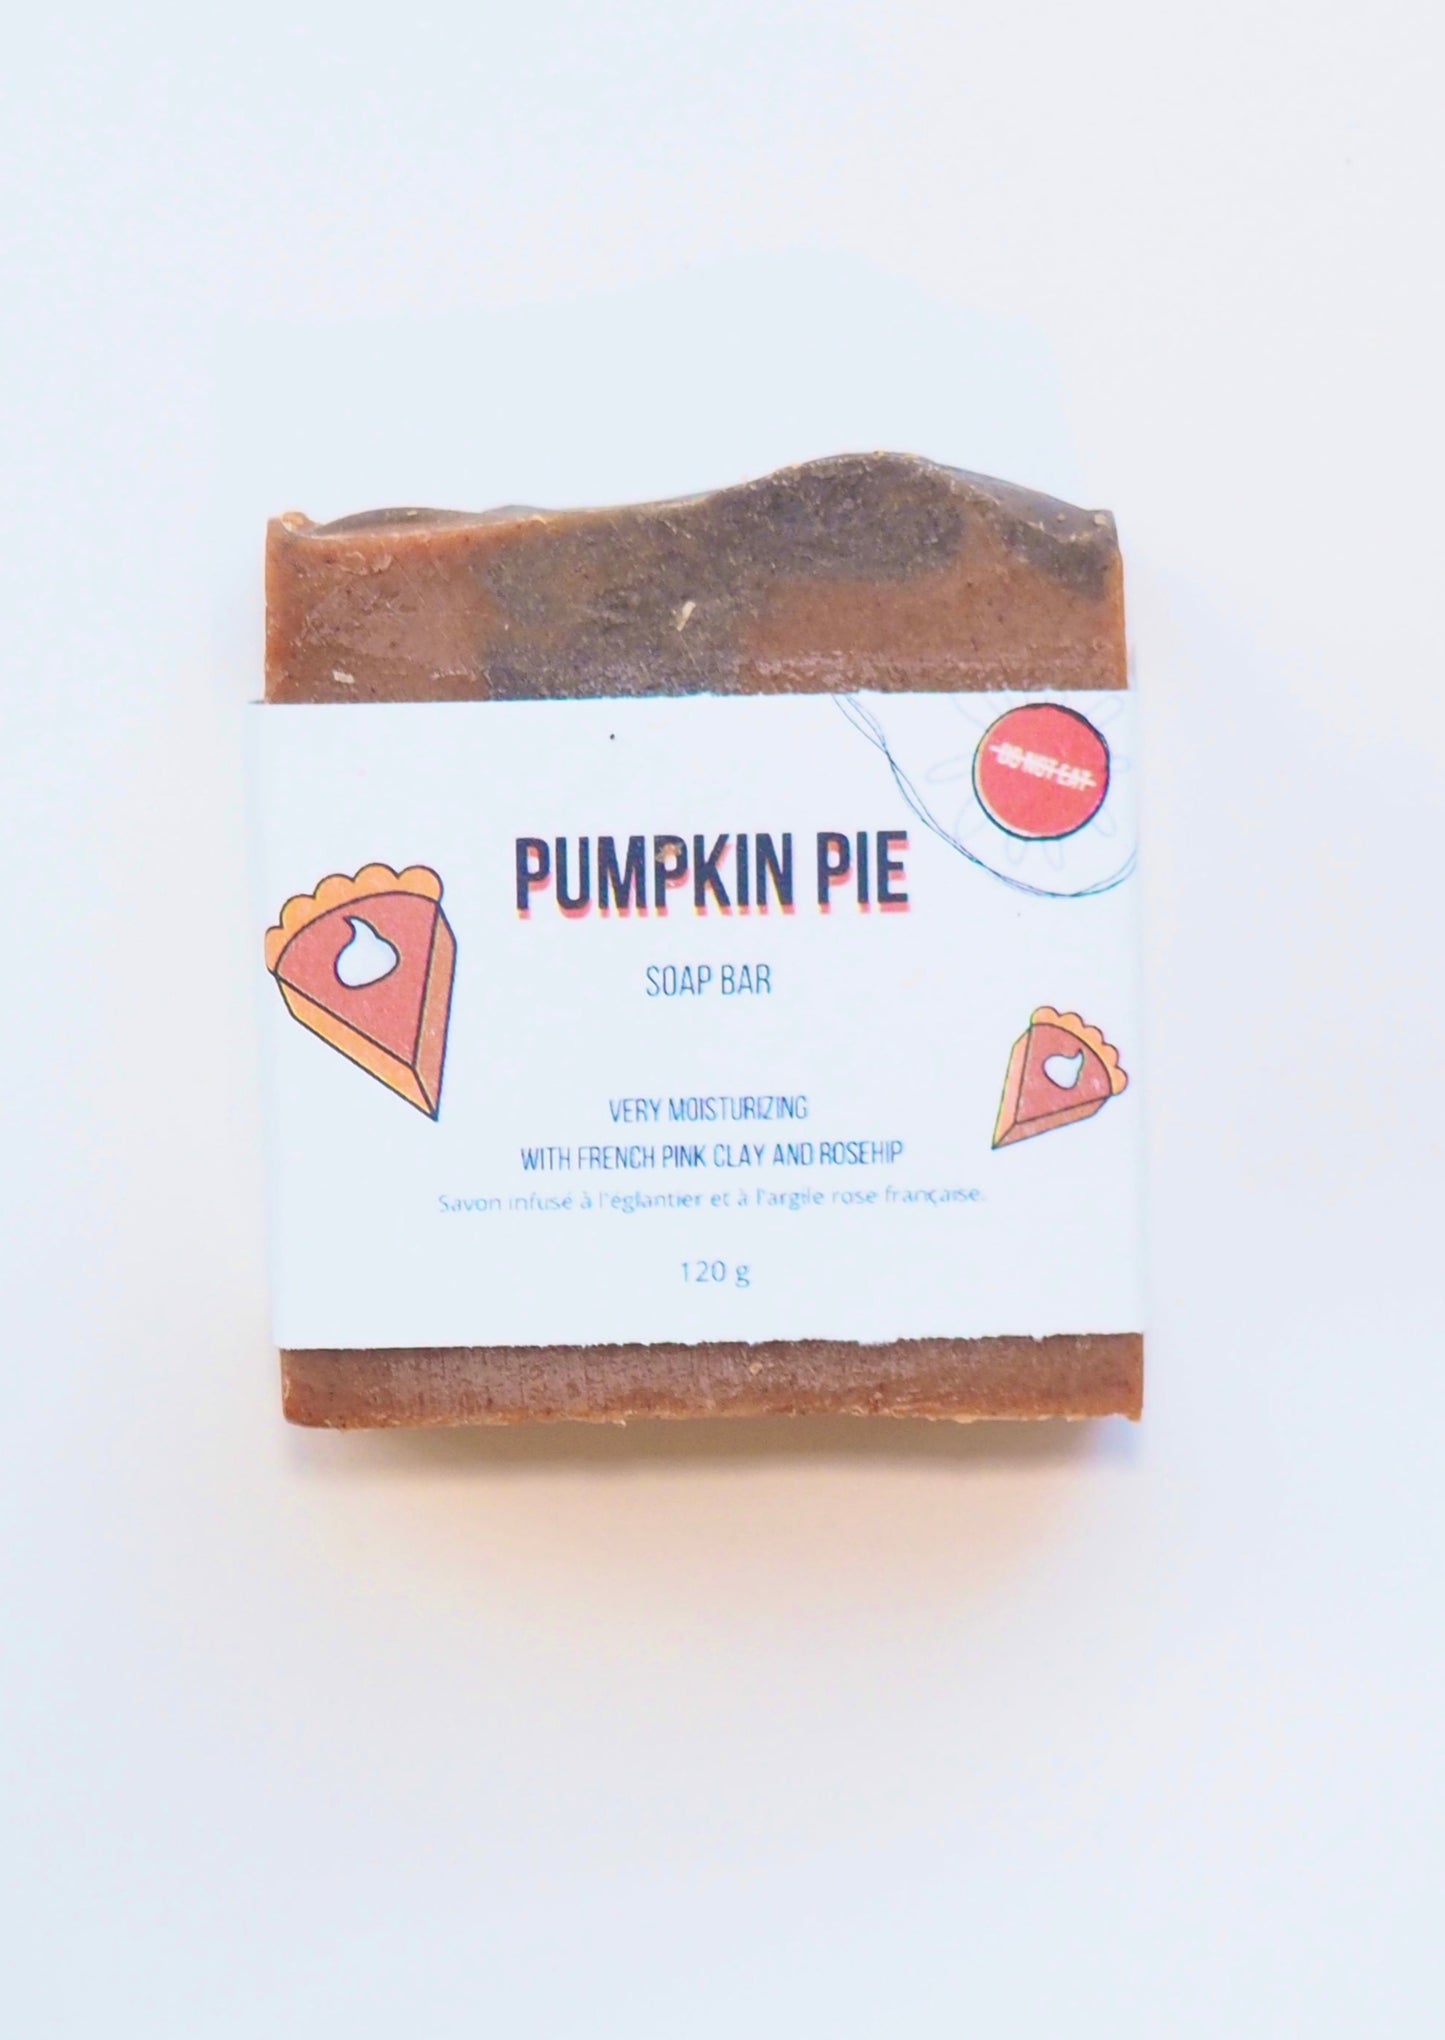 Do Not Eat: Pumpkin Pie Soap Bar